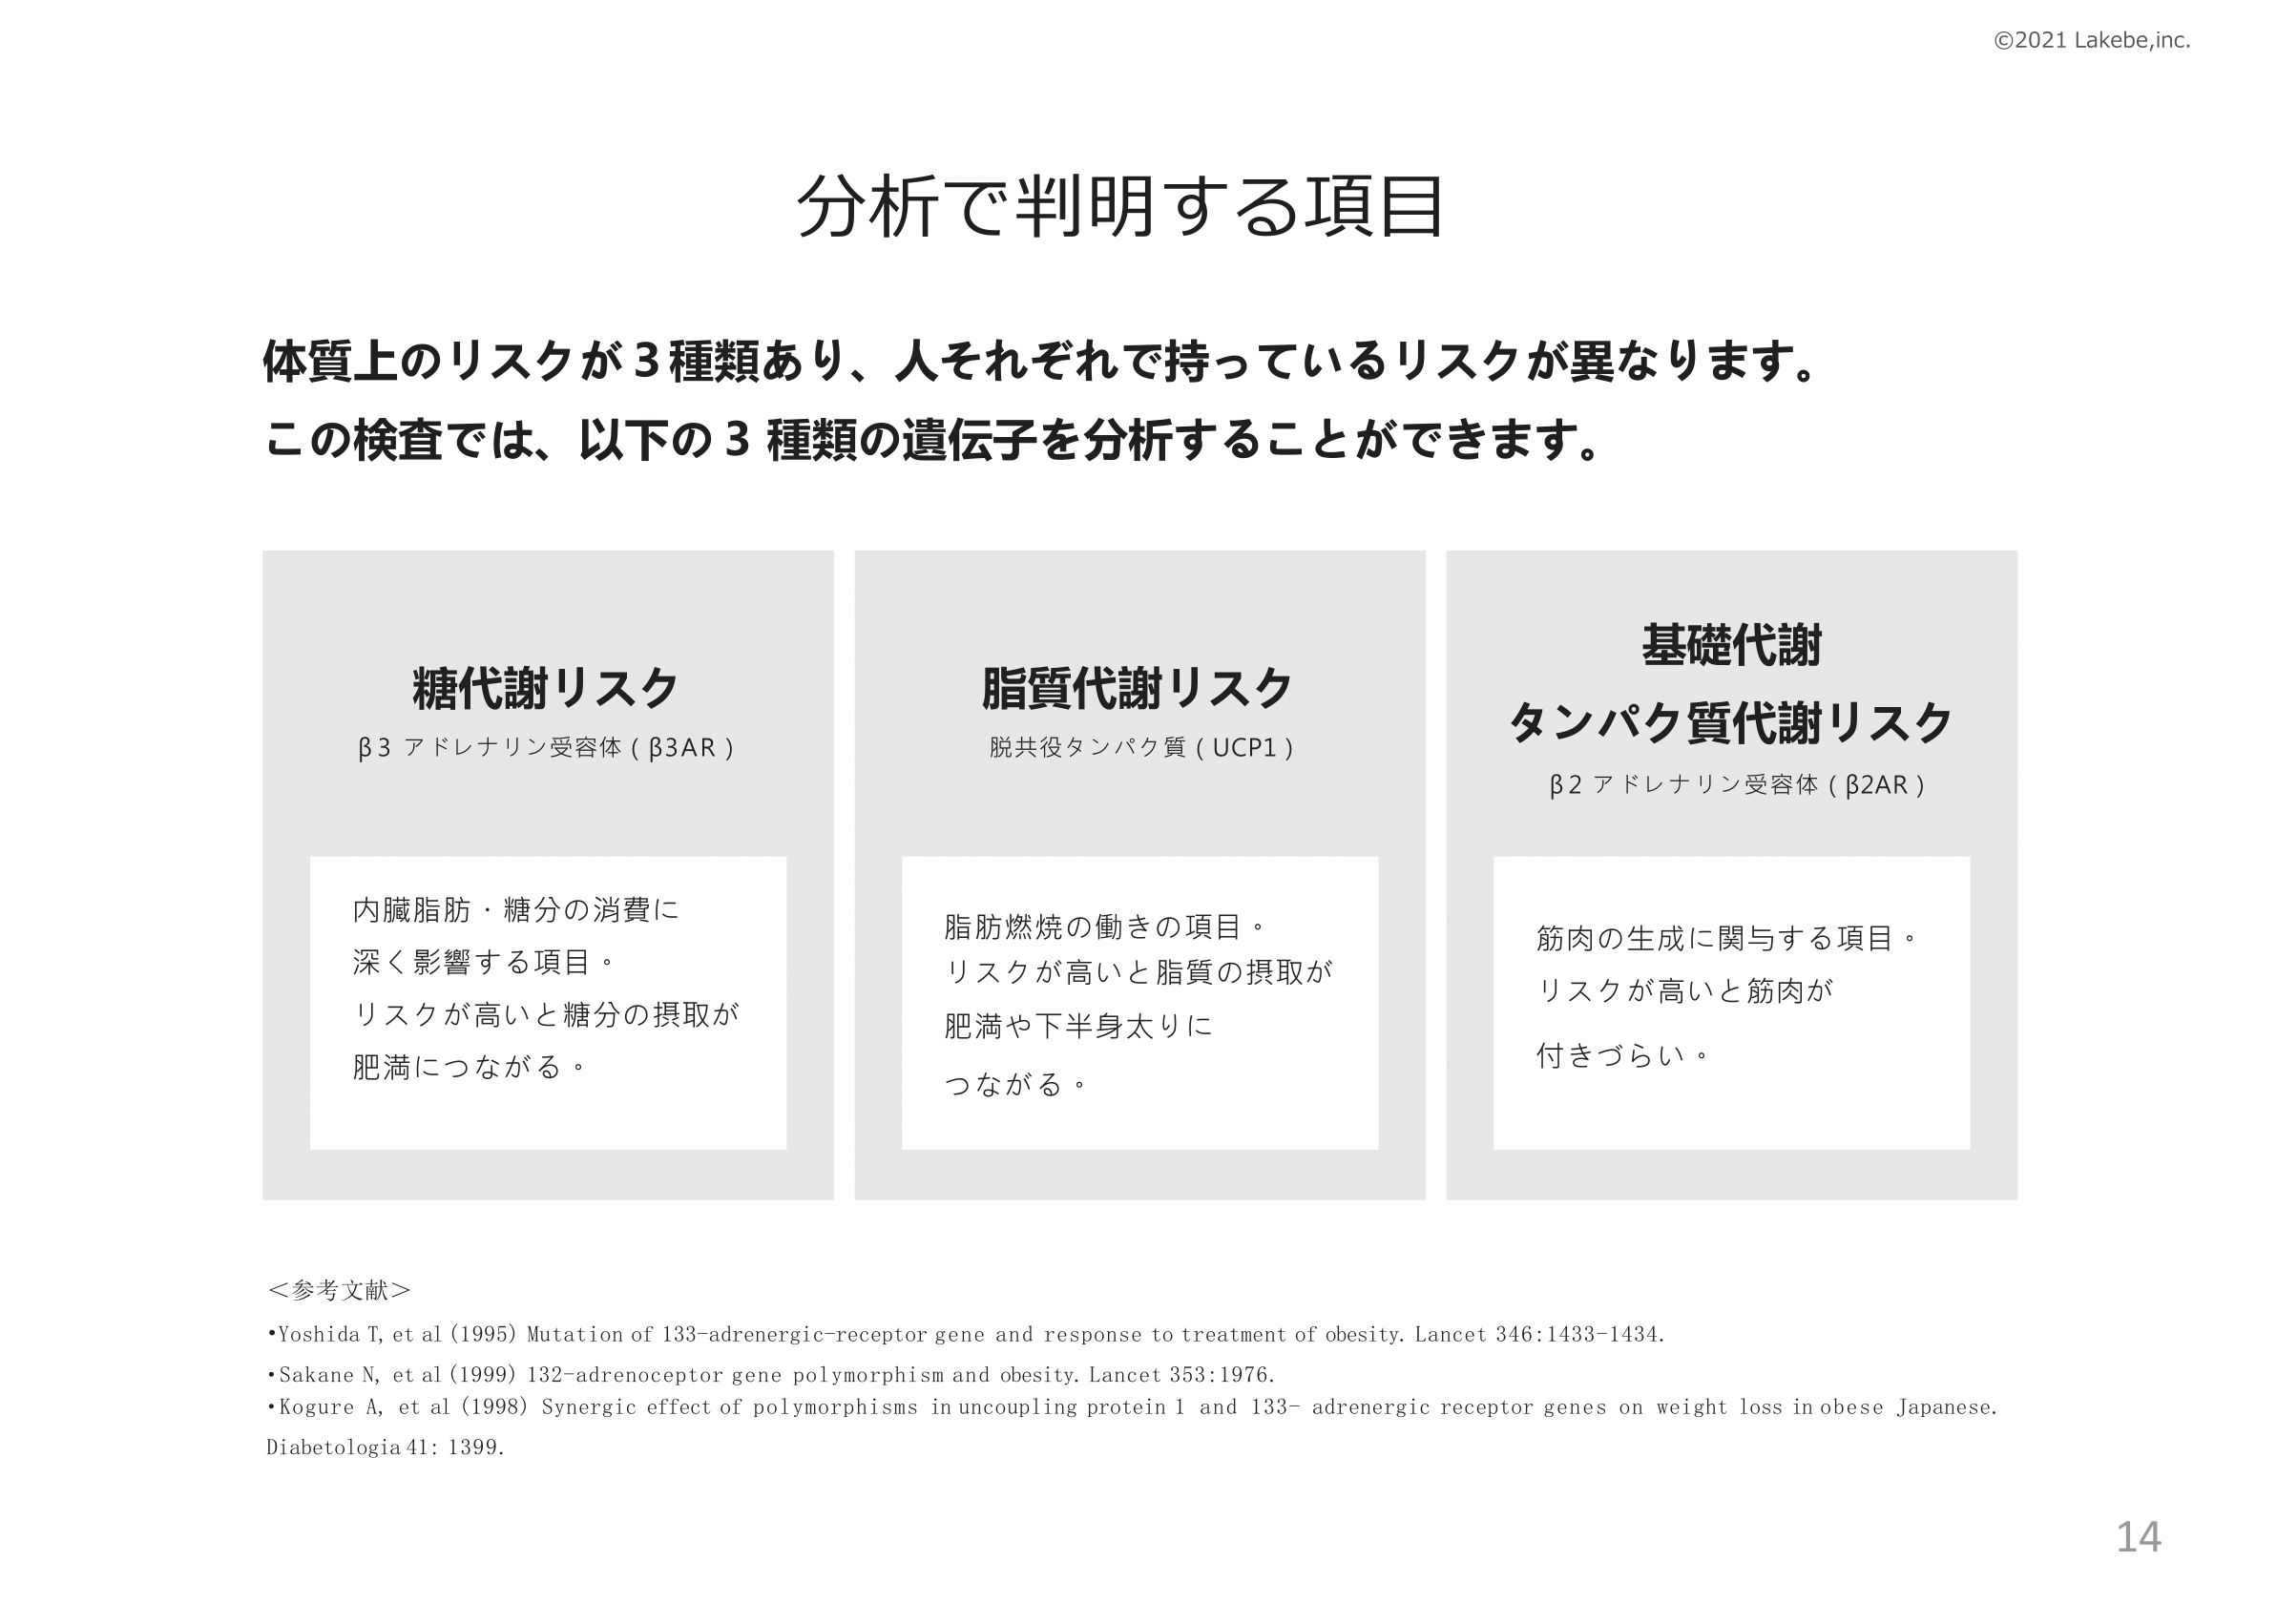 ■MYDENSI-マイデンシ-サービス概要資料-14.png